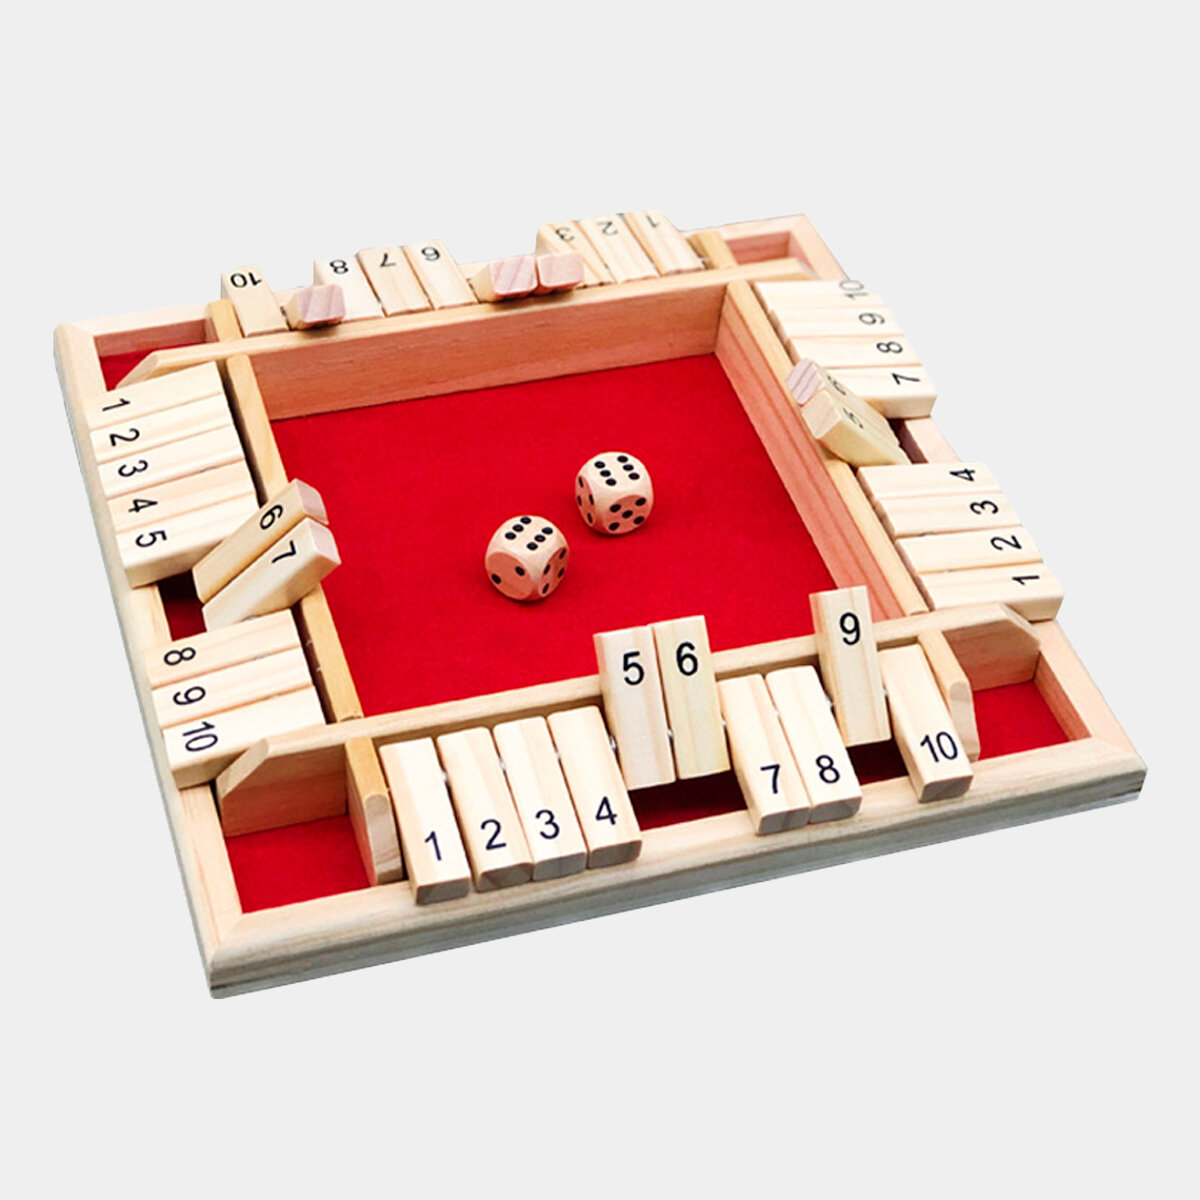 Настольная игра для компании "Закрой коробку" или "Канога", деревянная красная